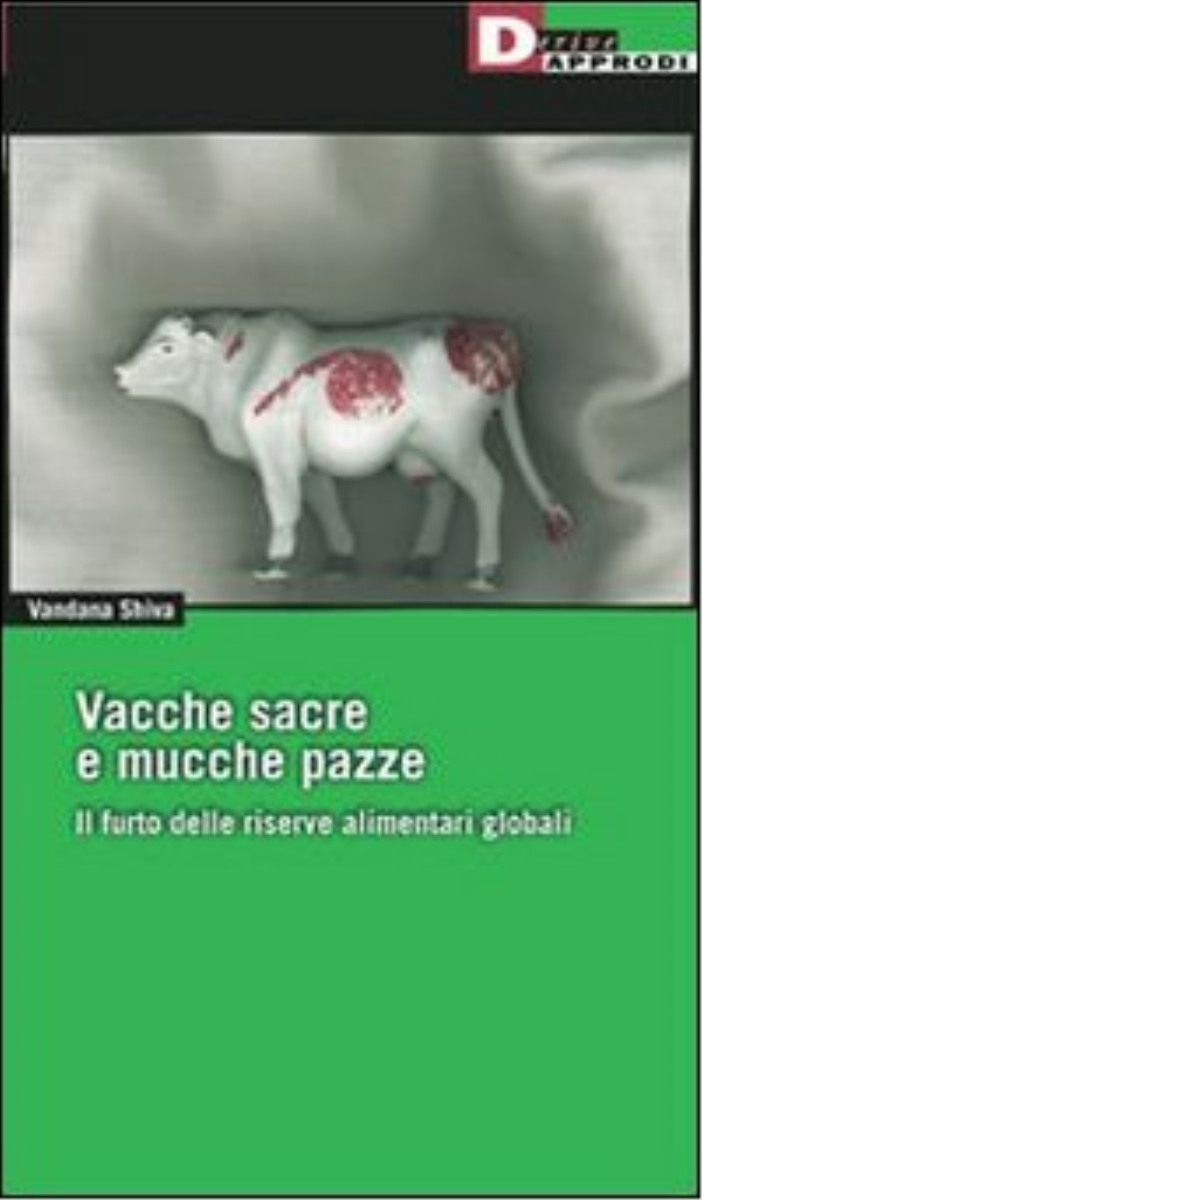 VACCHE SACRE E MUCCHE PAZZE. N.E. di VANDANA SHIVA - DeriveApprodi editore,2004